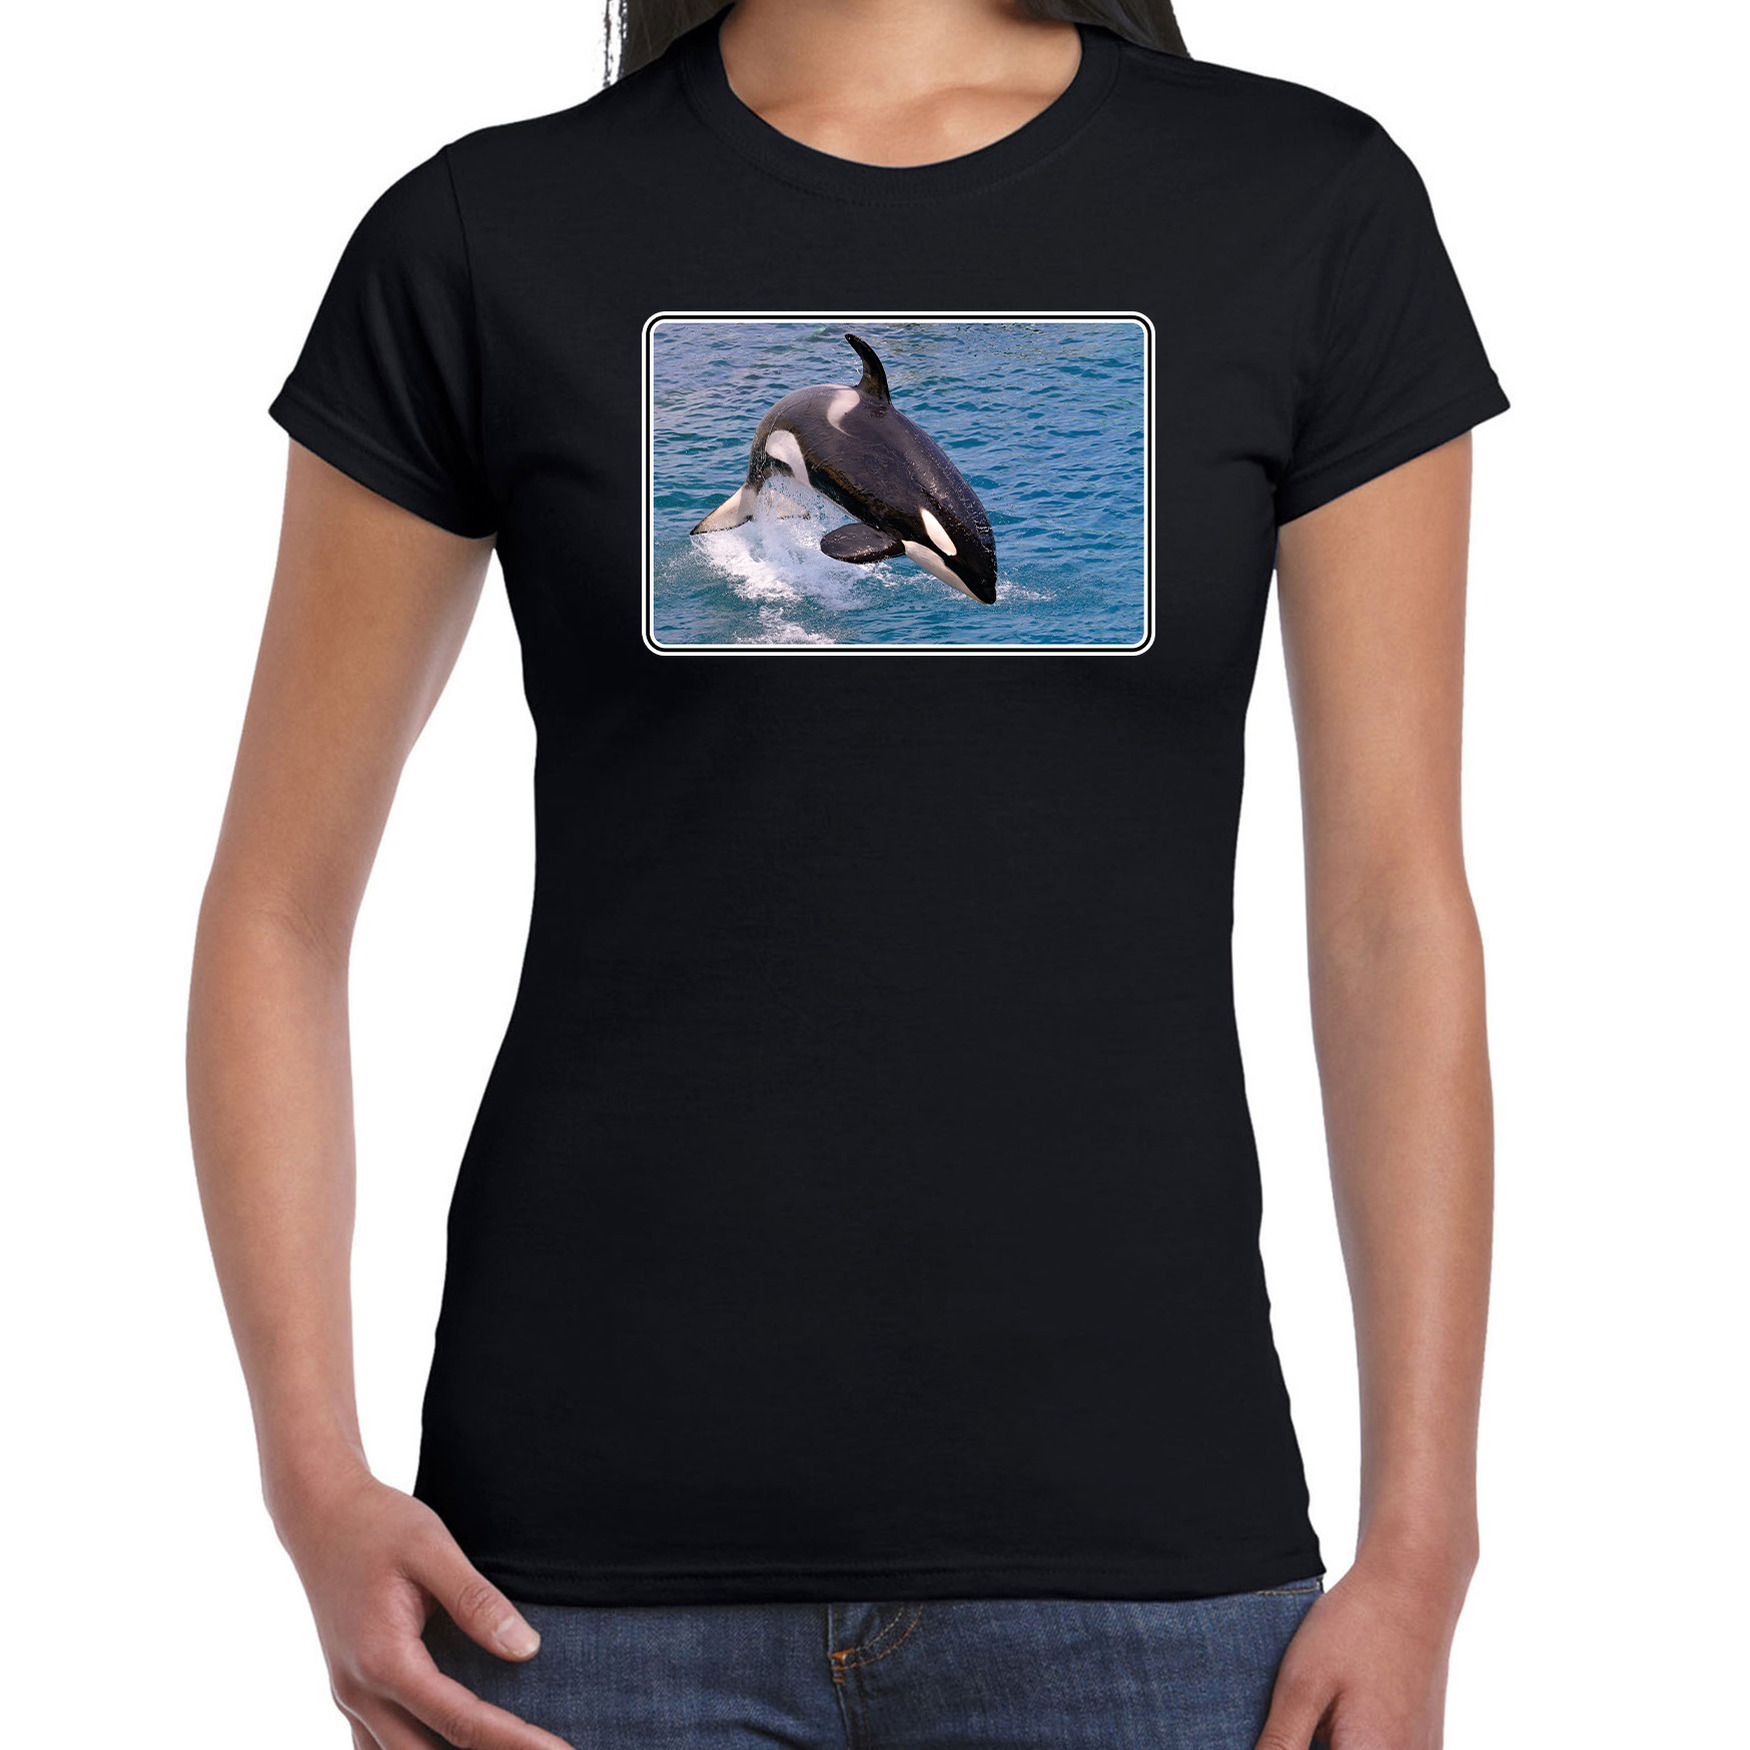 Dieren t-shirt met orka walvissen foto zwart voor dames